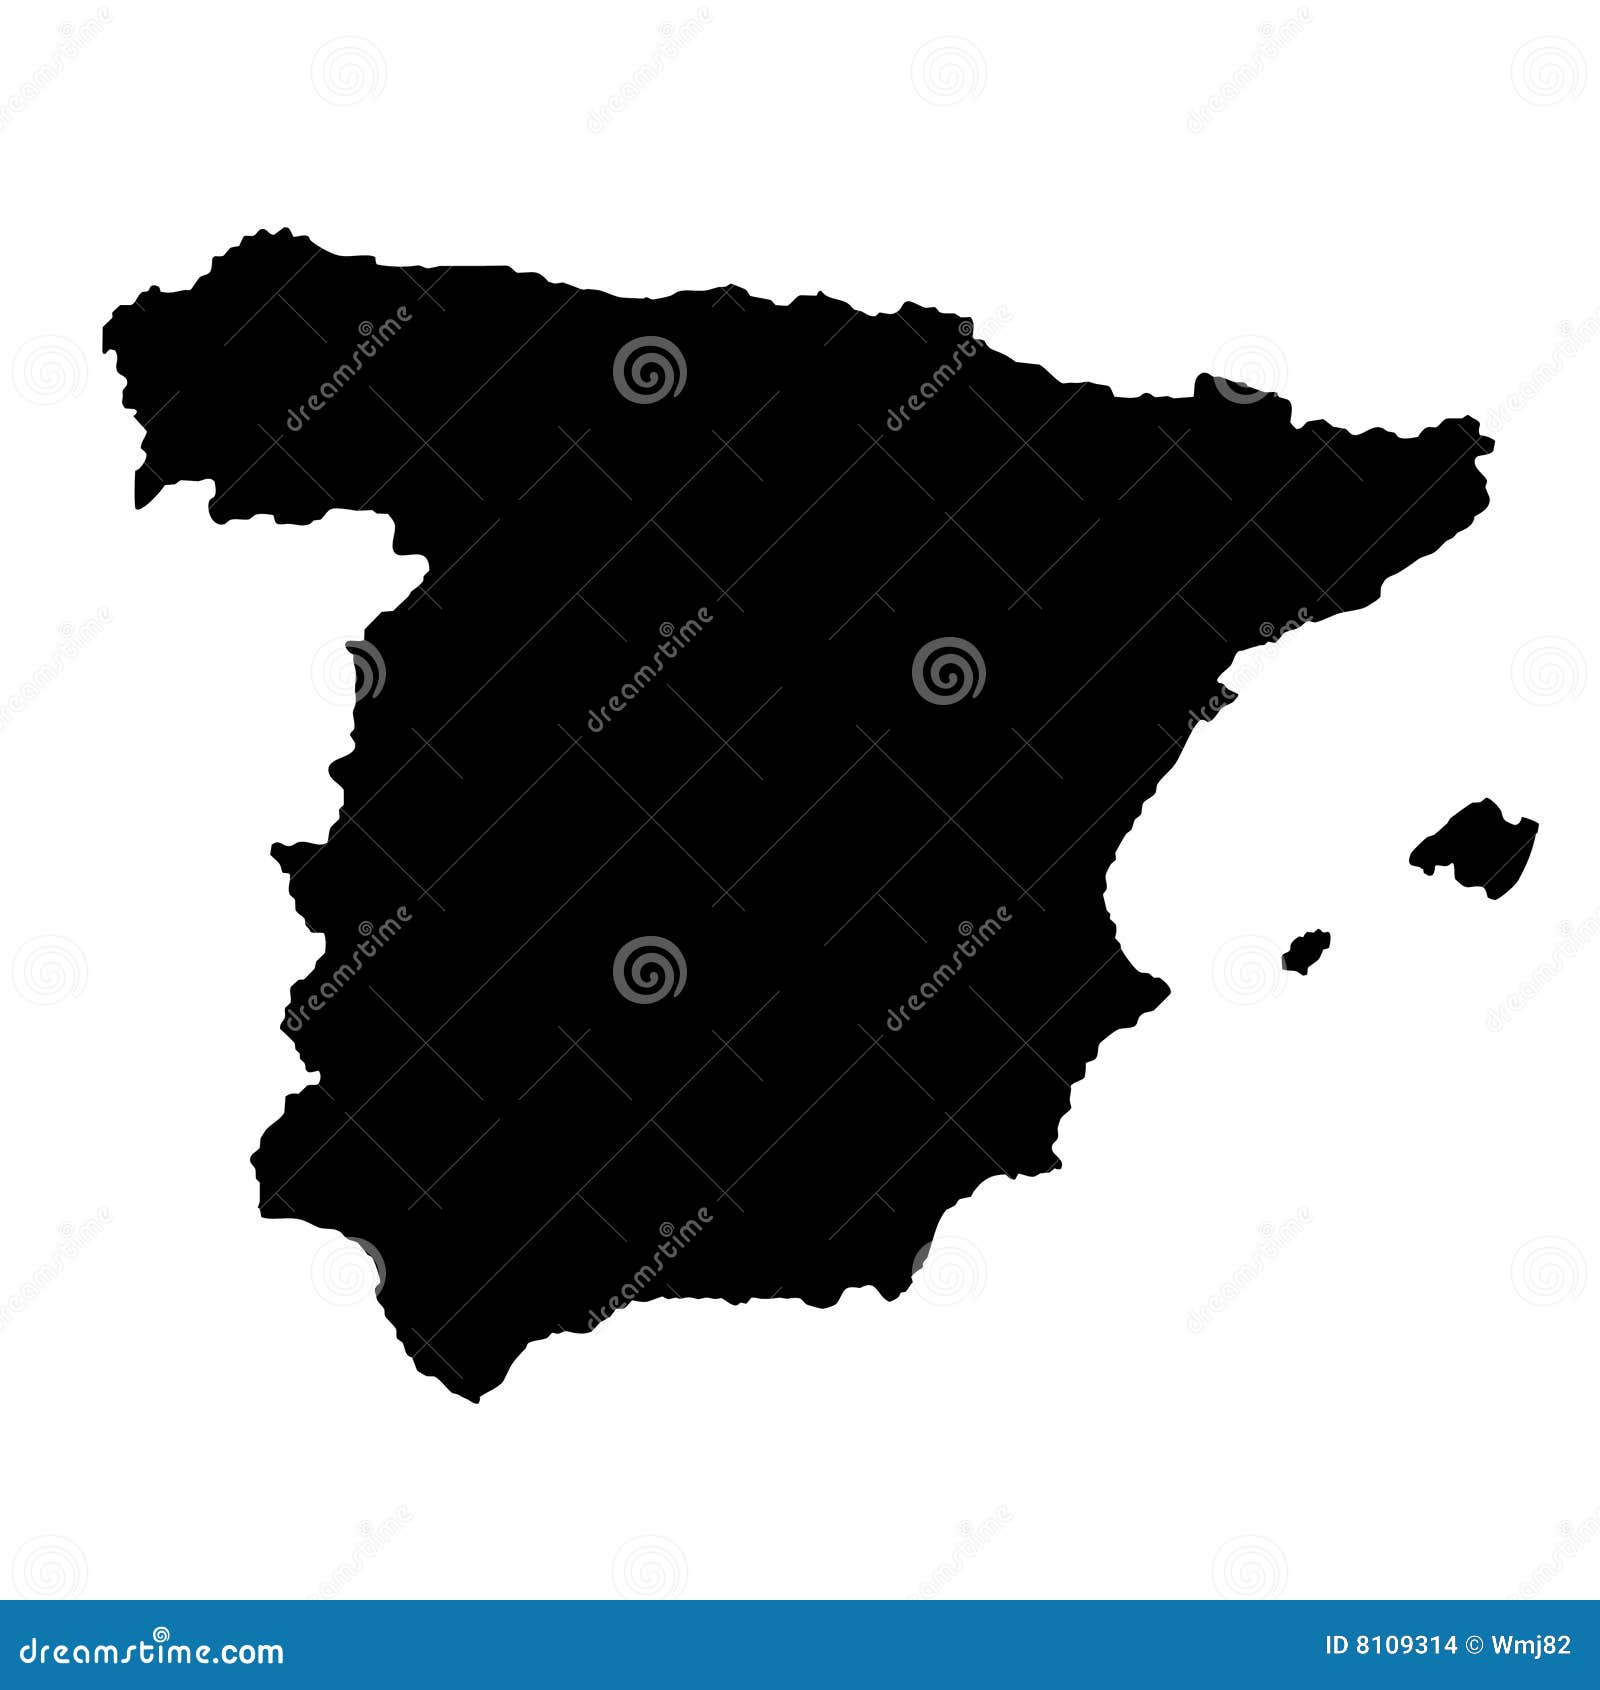 Испания Фото Карты